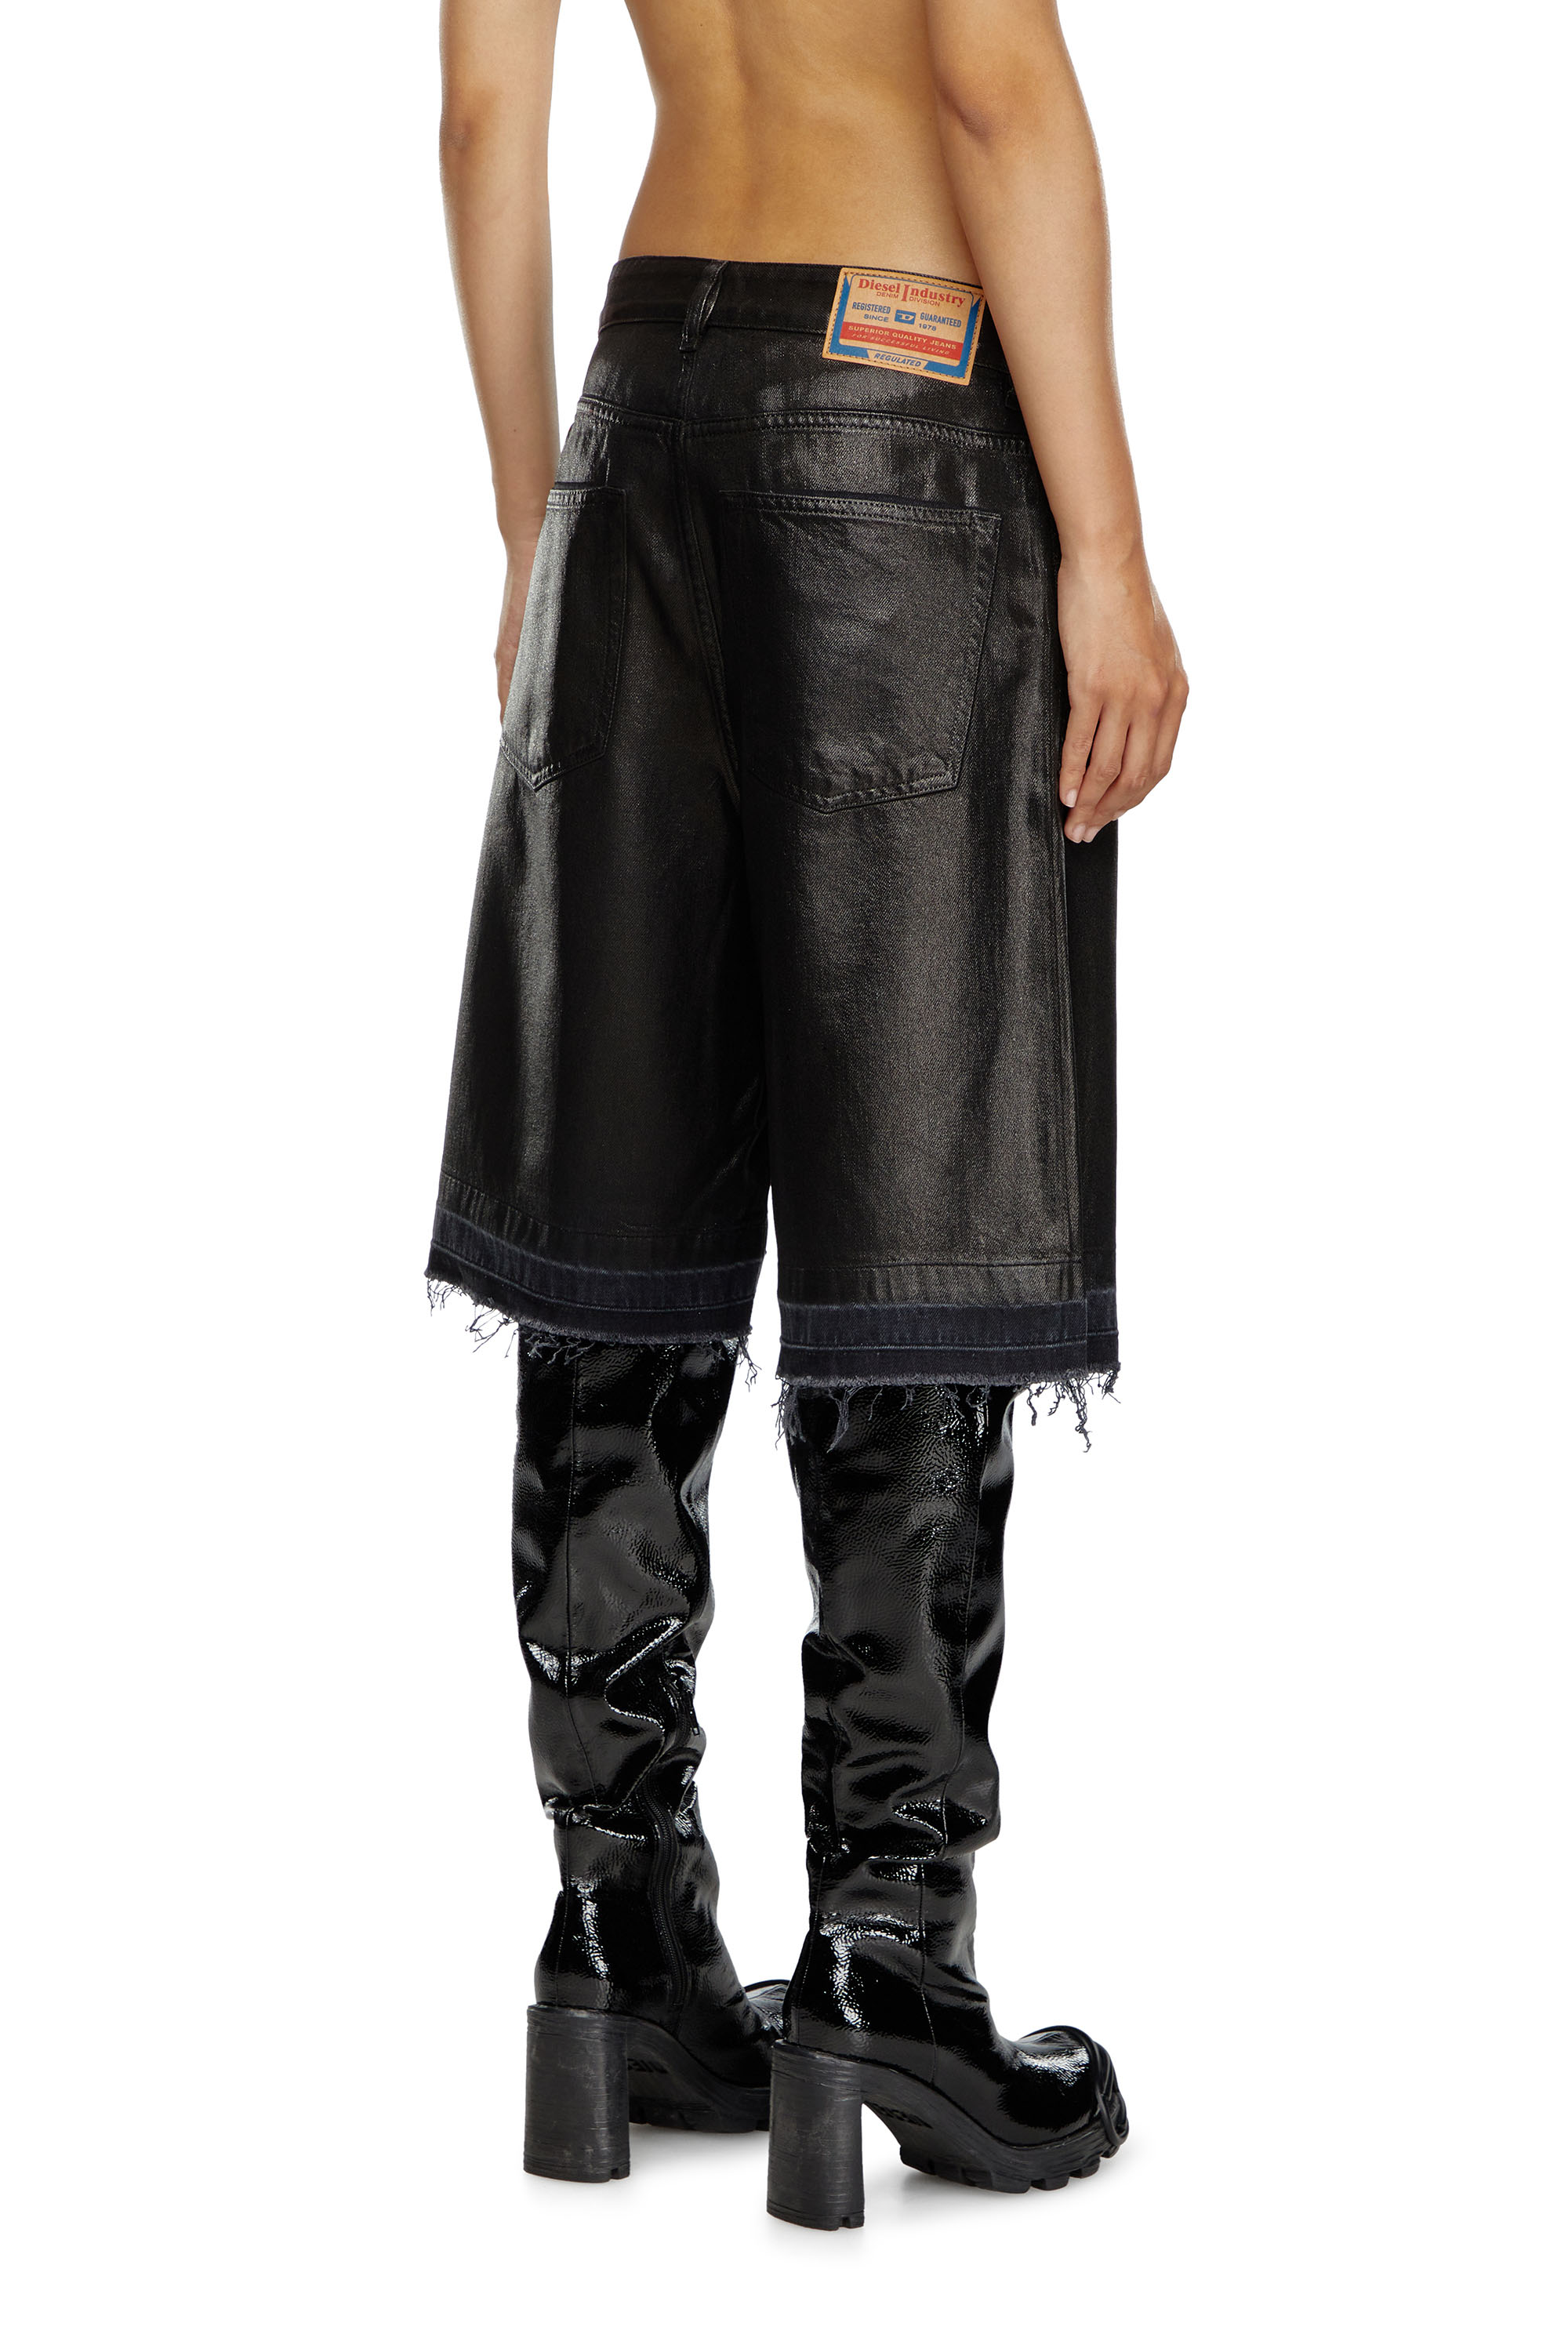 Diesel - DE-SIRE-SHORT, Damen Shorts aus beschichtetem Tailoring-Denim in Schwarz - Image 3